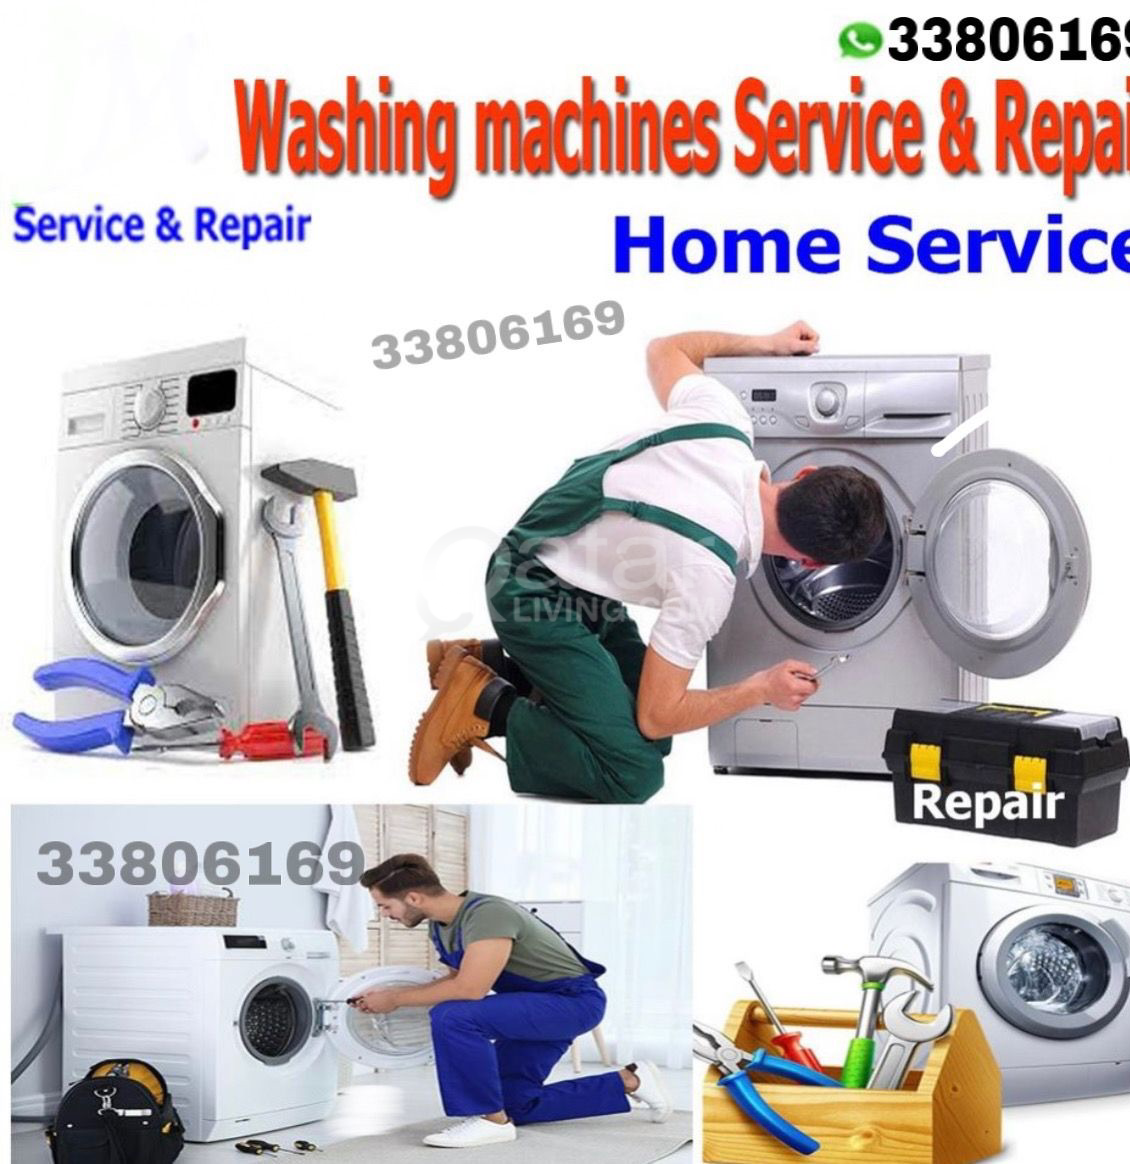 Washing machine repair service in Doha Qatar 33806169